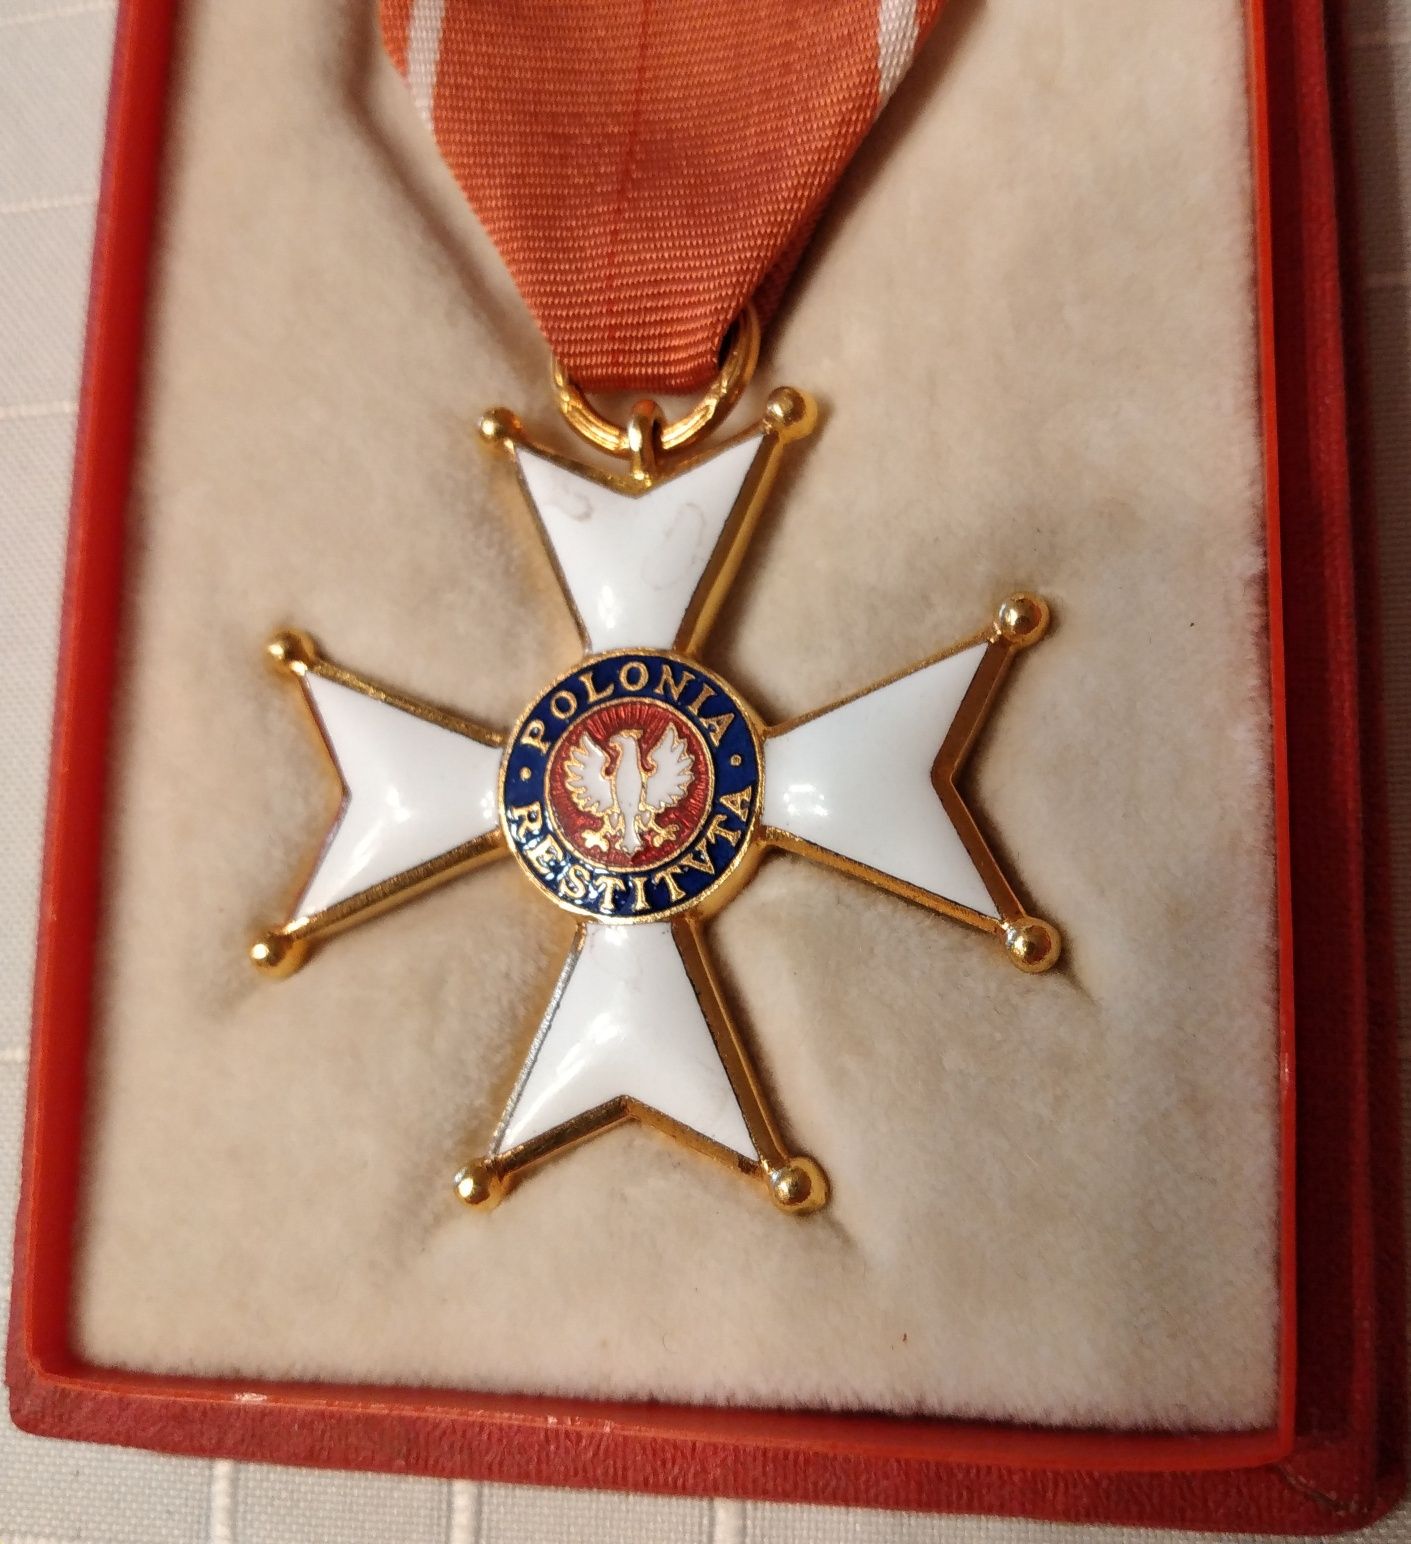 odznaczenie Krzyż Kawalerski Orderu O. P. 1966 medal nadanie miniatura